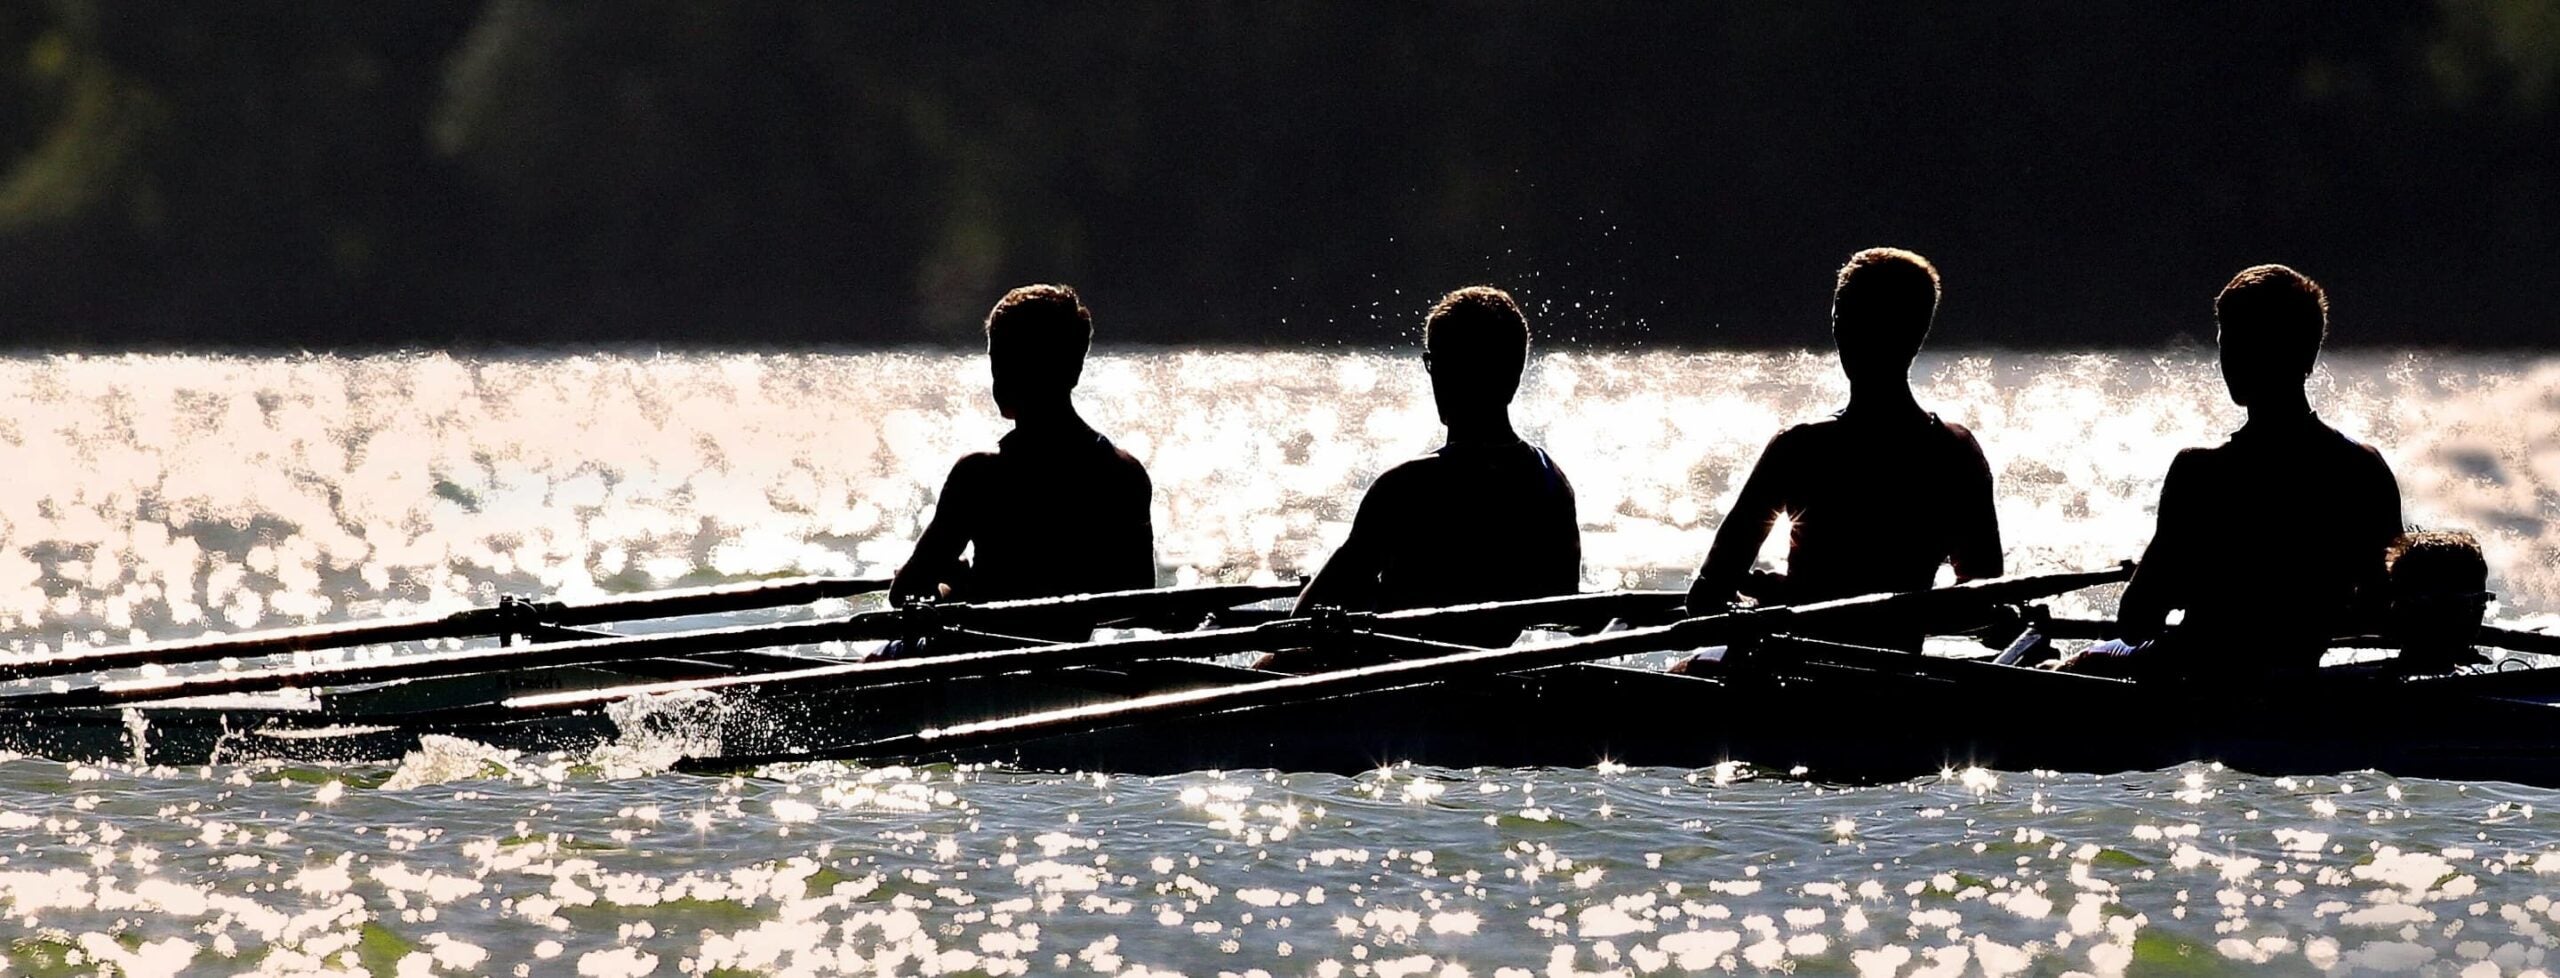 Men rowing in row boat race